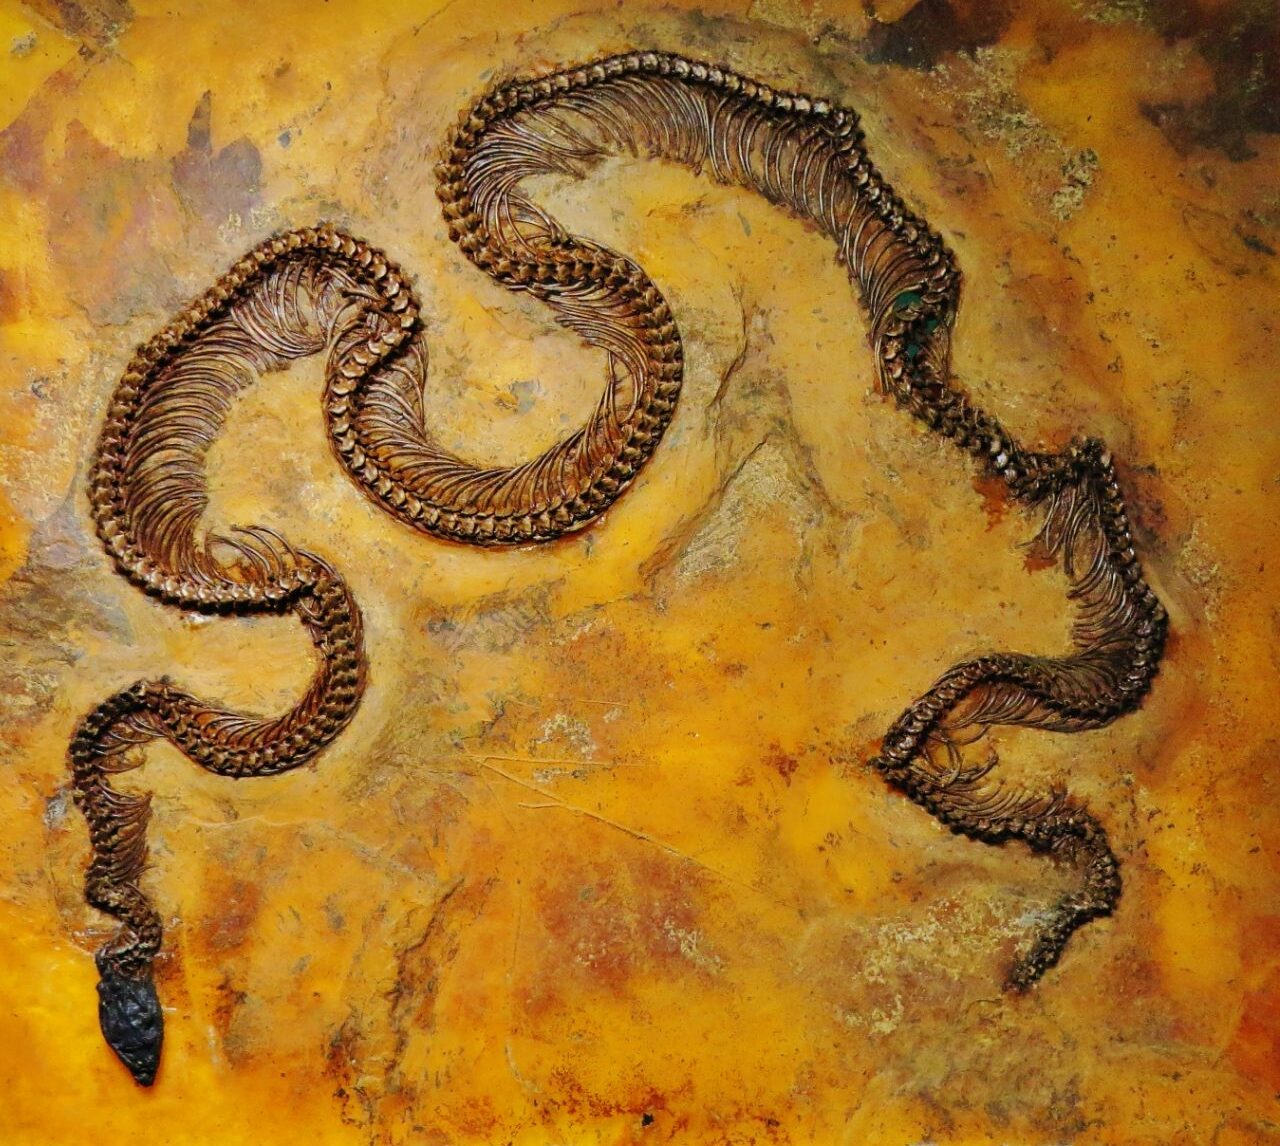 Змея Мессель Пит с инфракрасным зрением